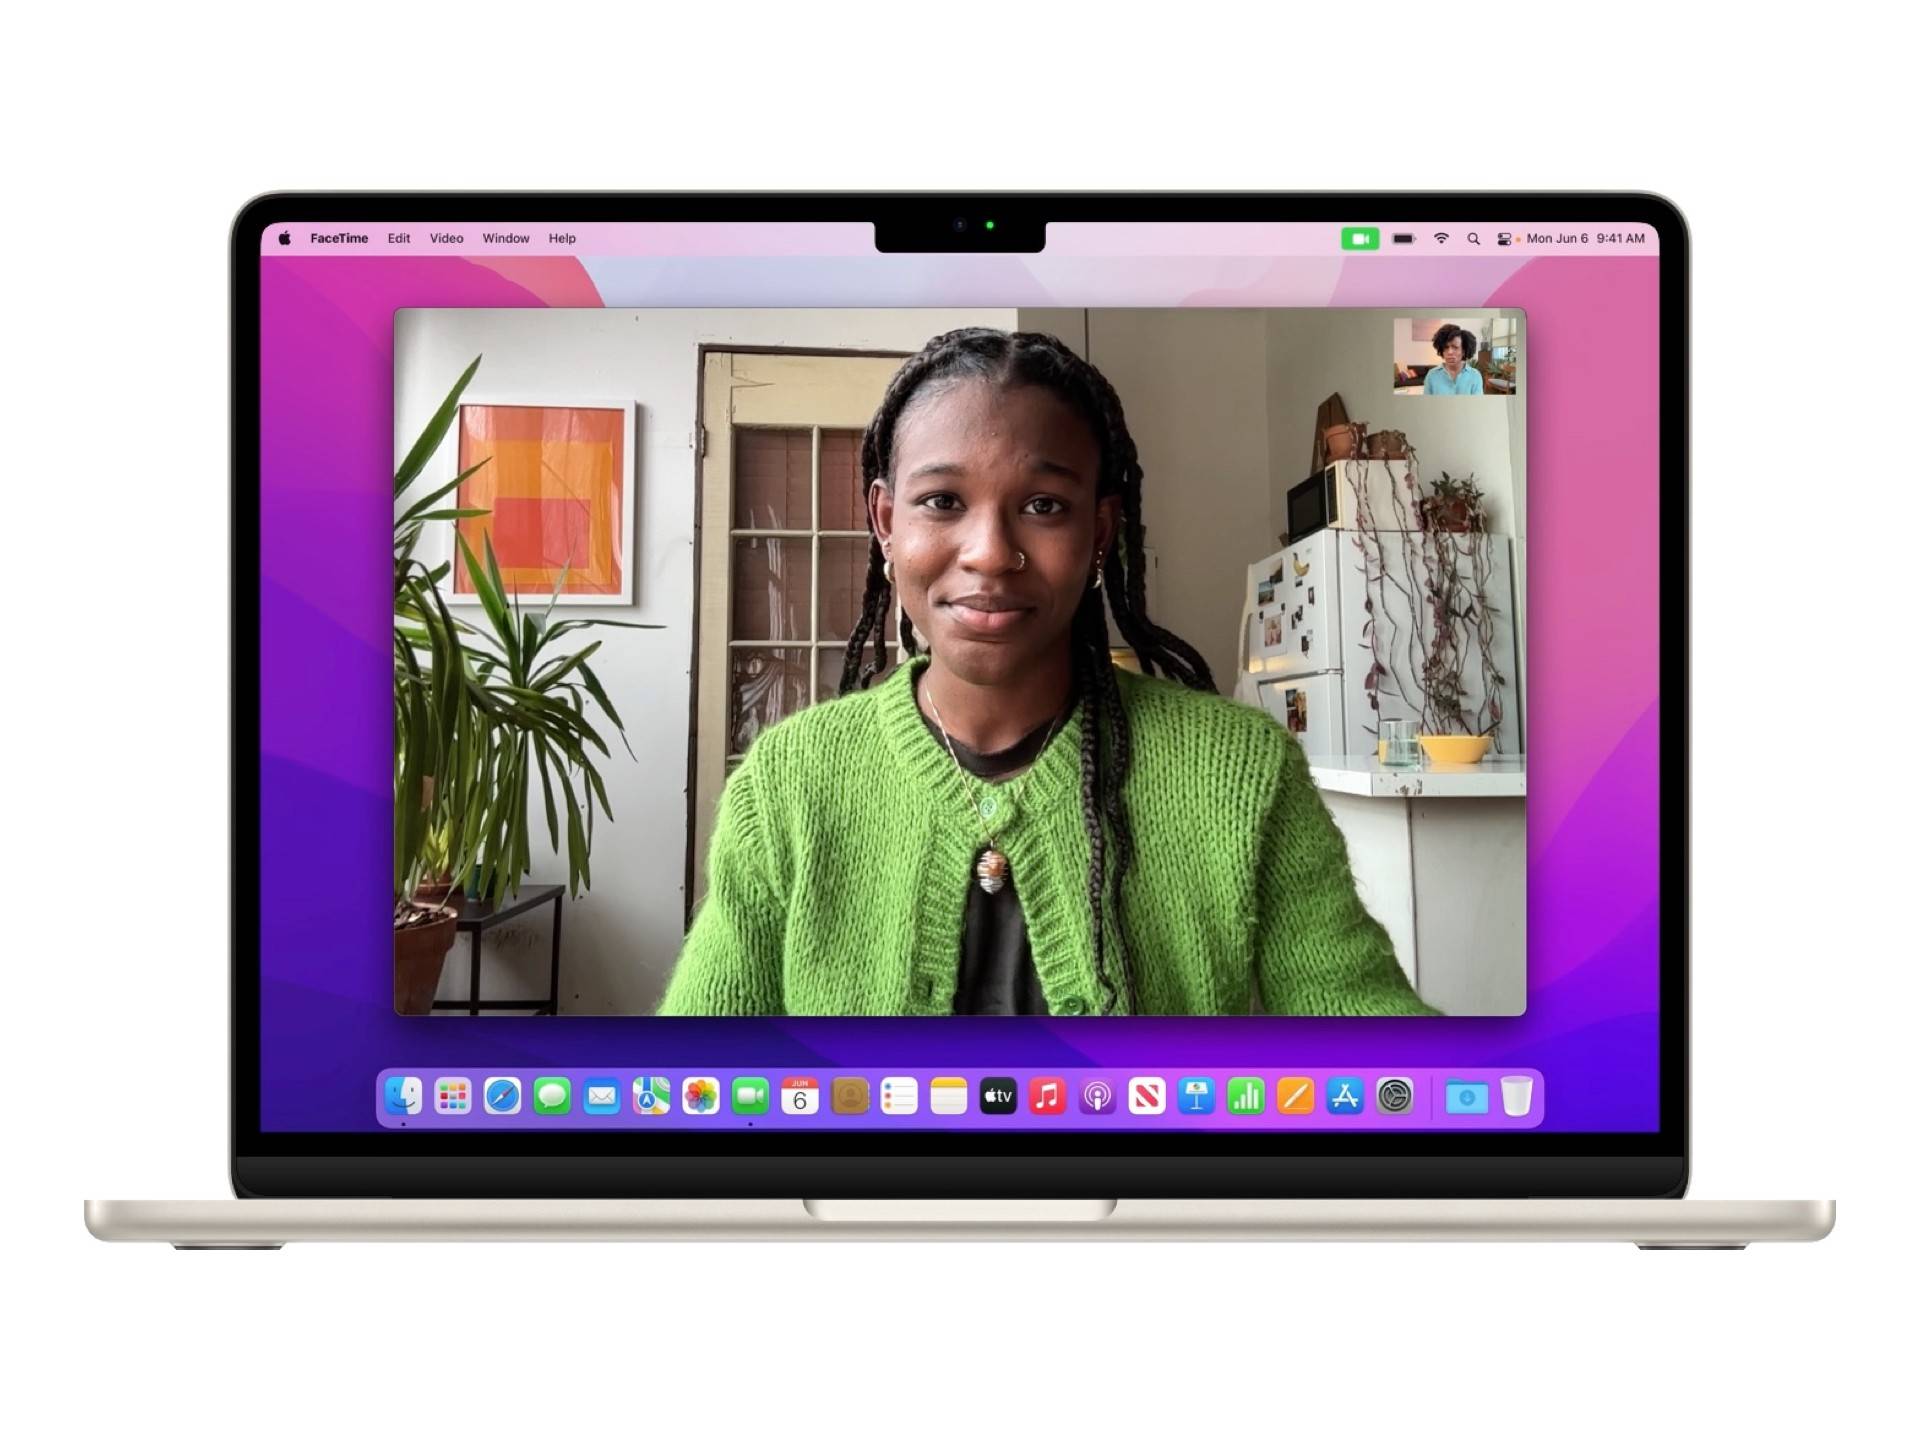 MacBook Air video calling